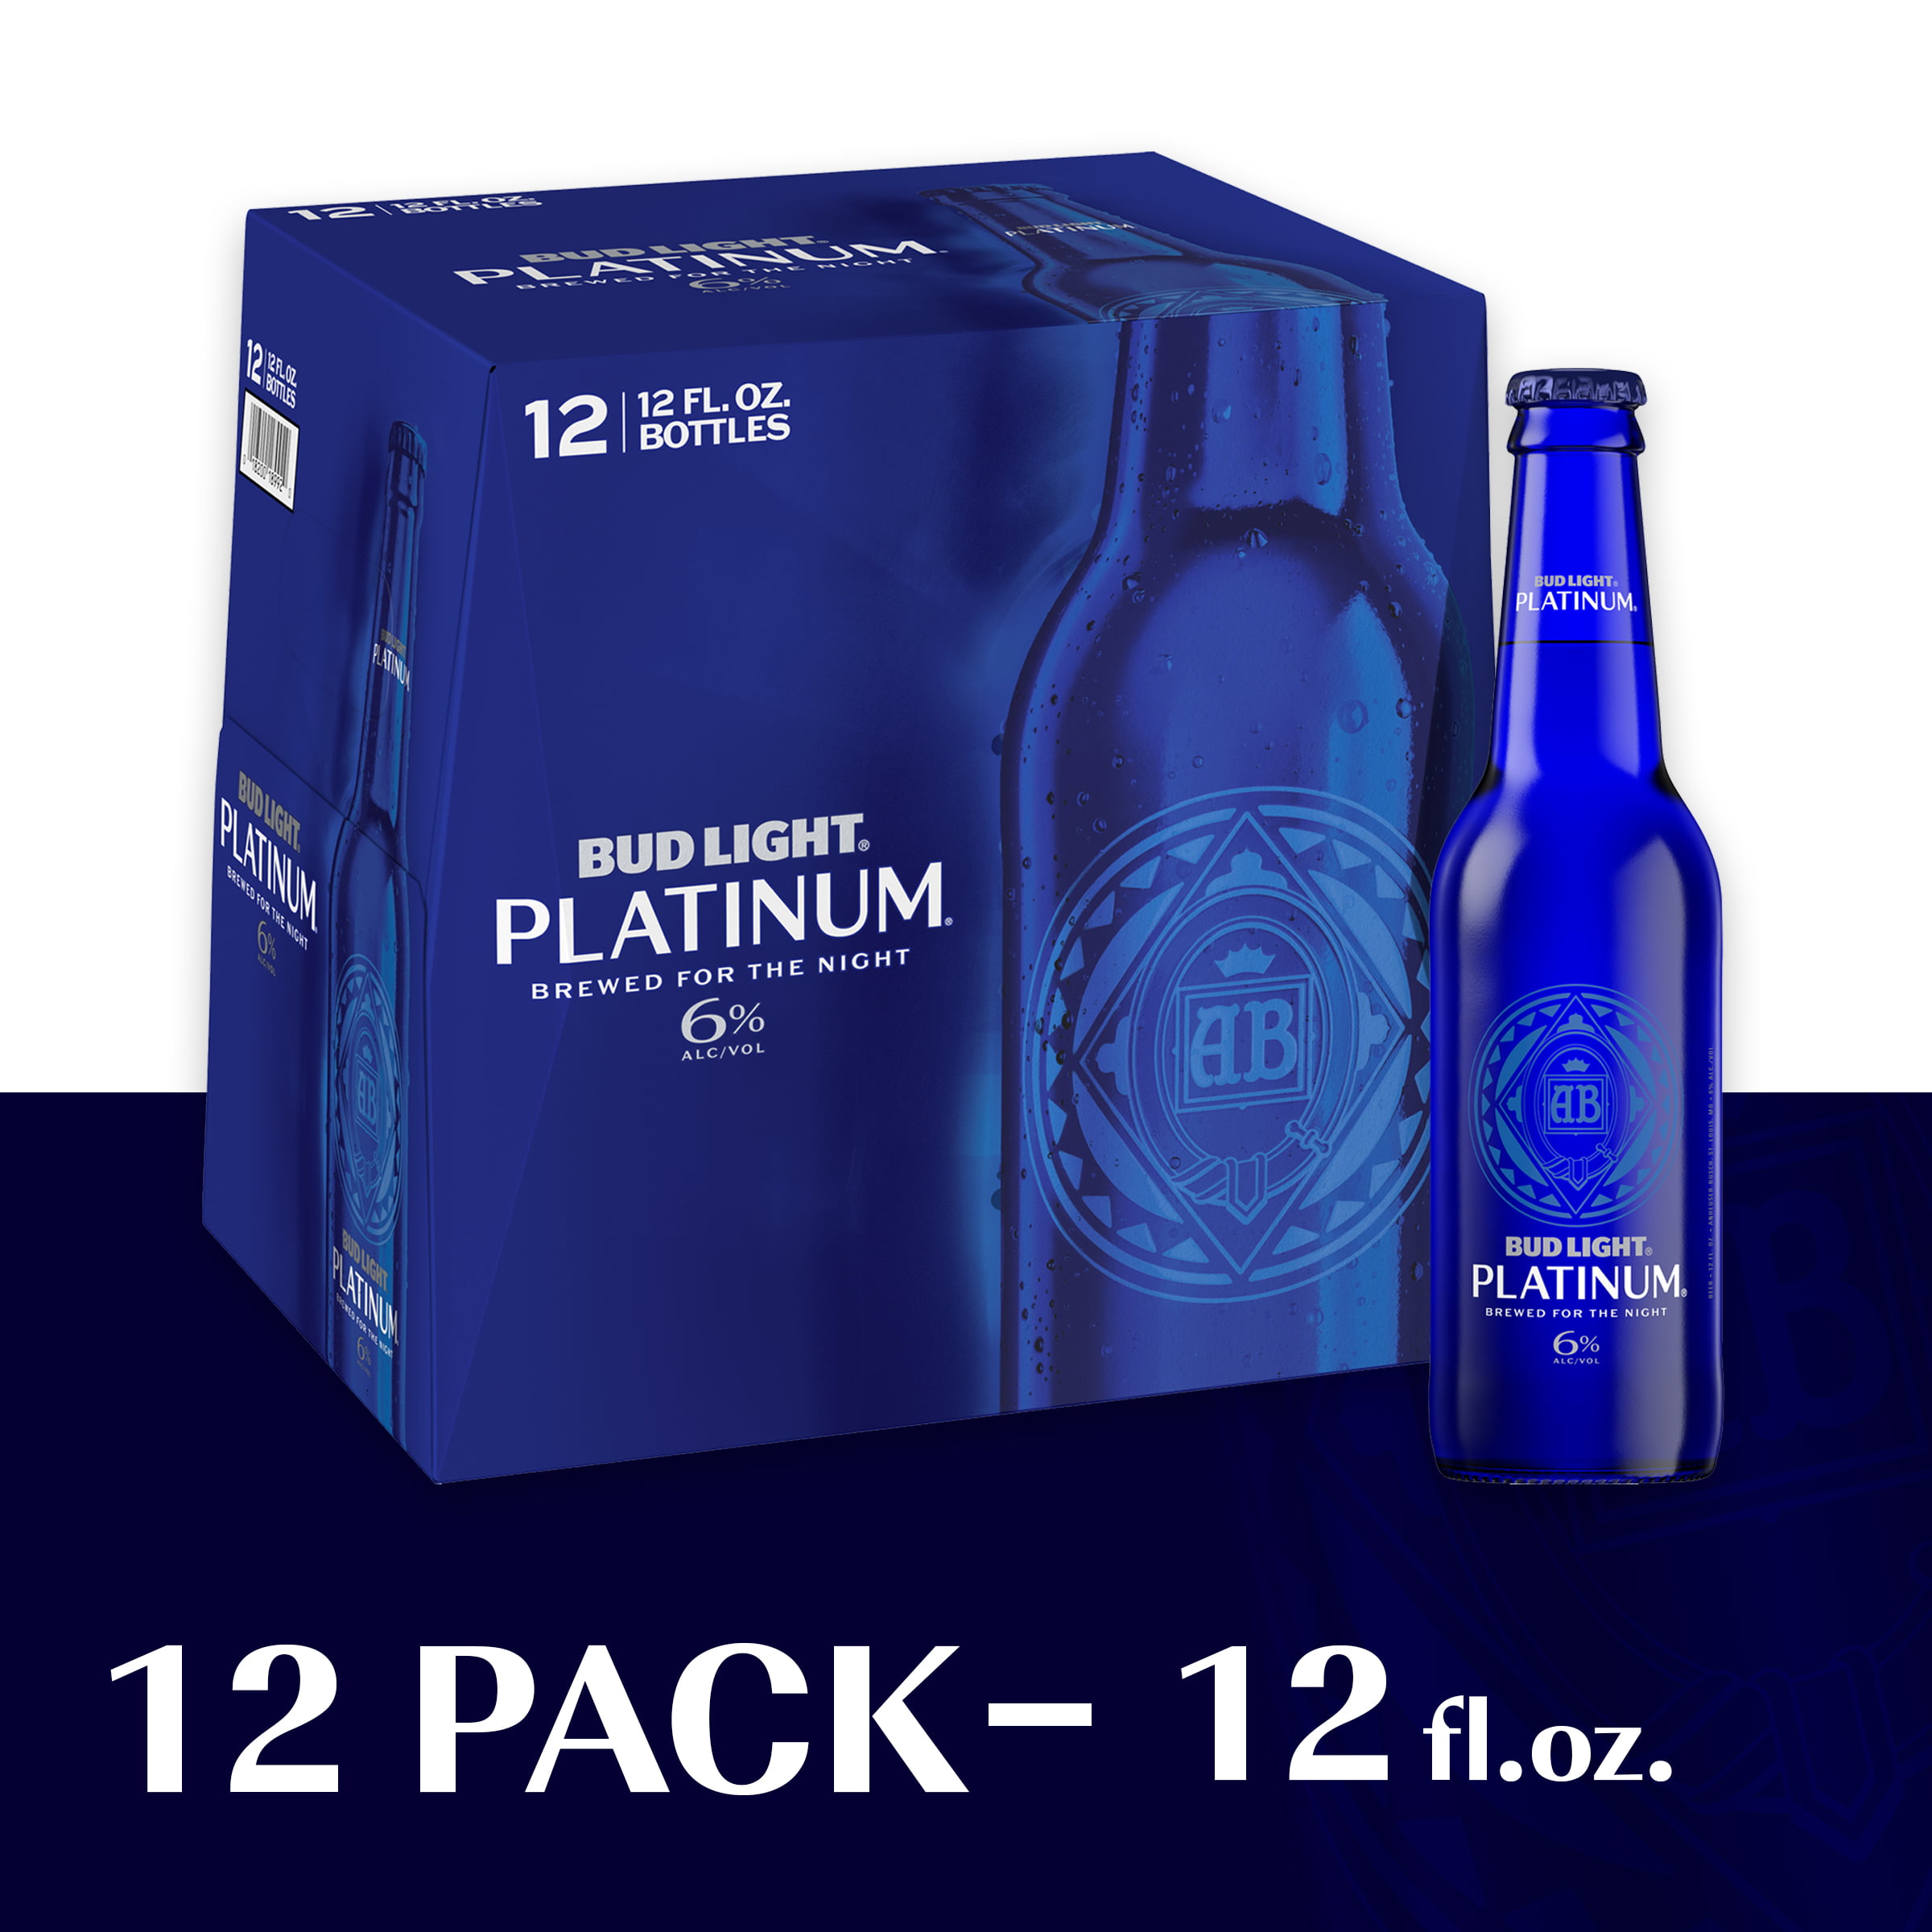 Bud Light Platinum Beer 12 Pack Beer 12 Fl Oz Bottles 6 Abv Walmart Com Walmart Com